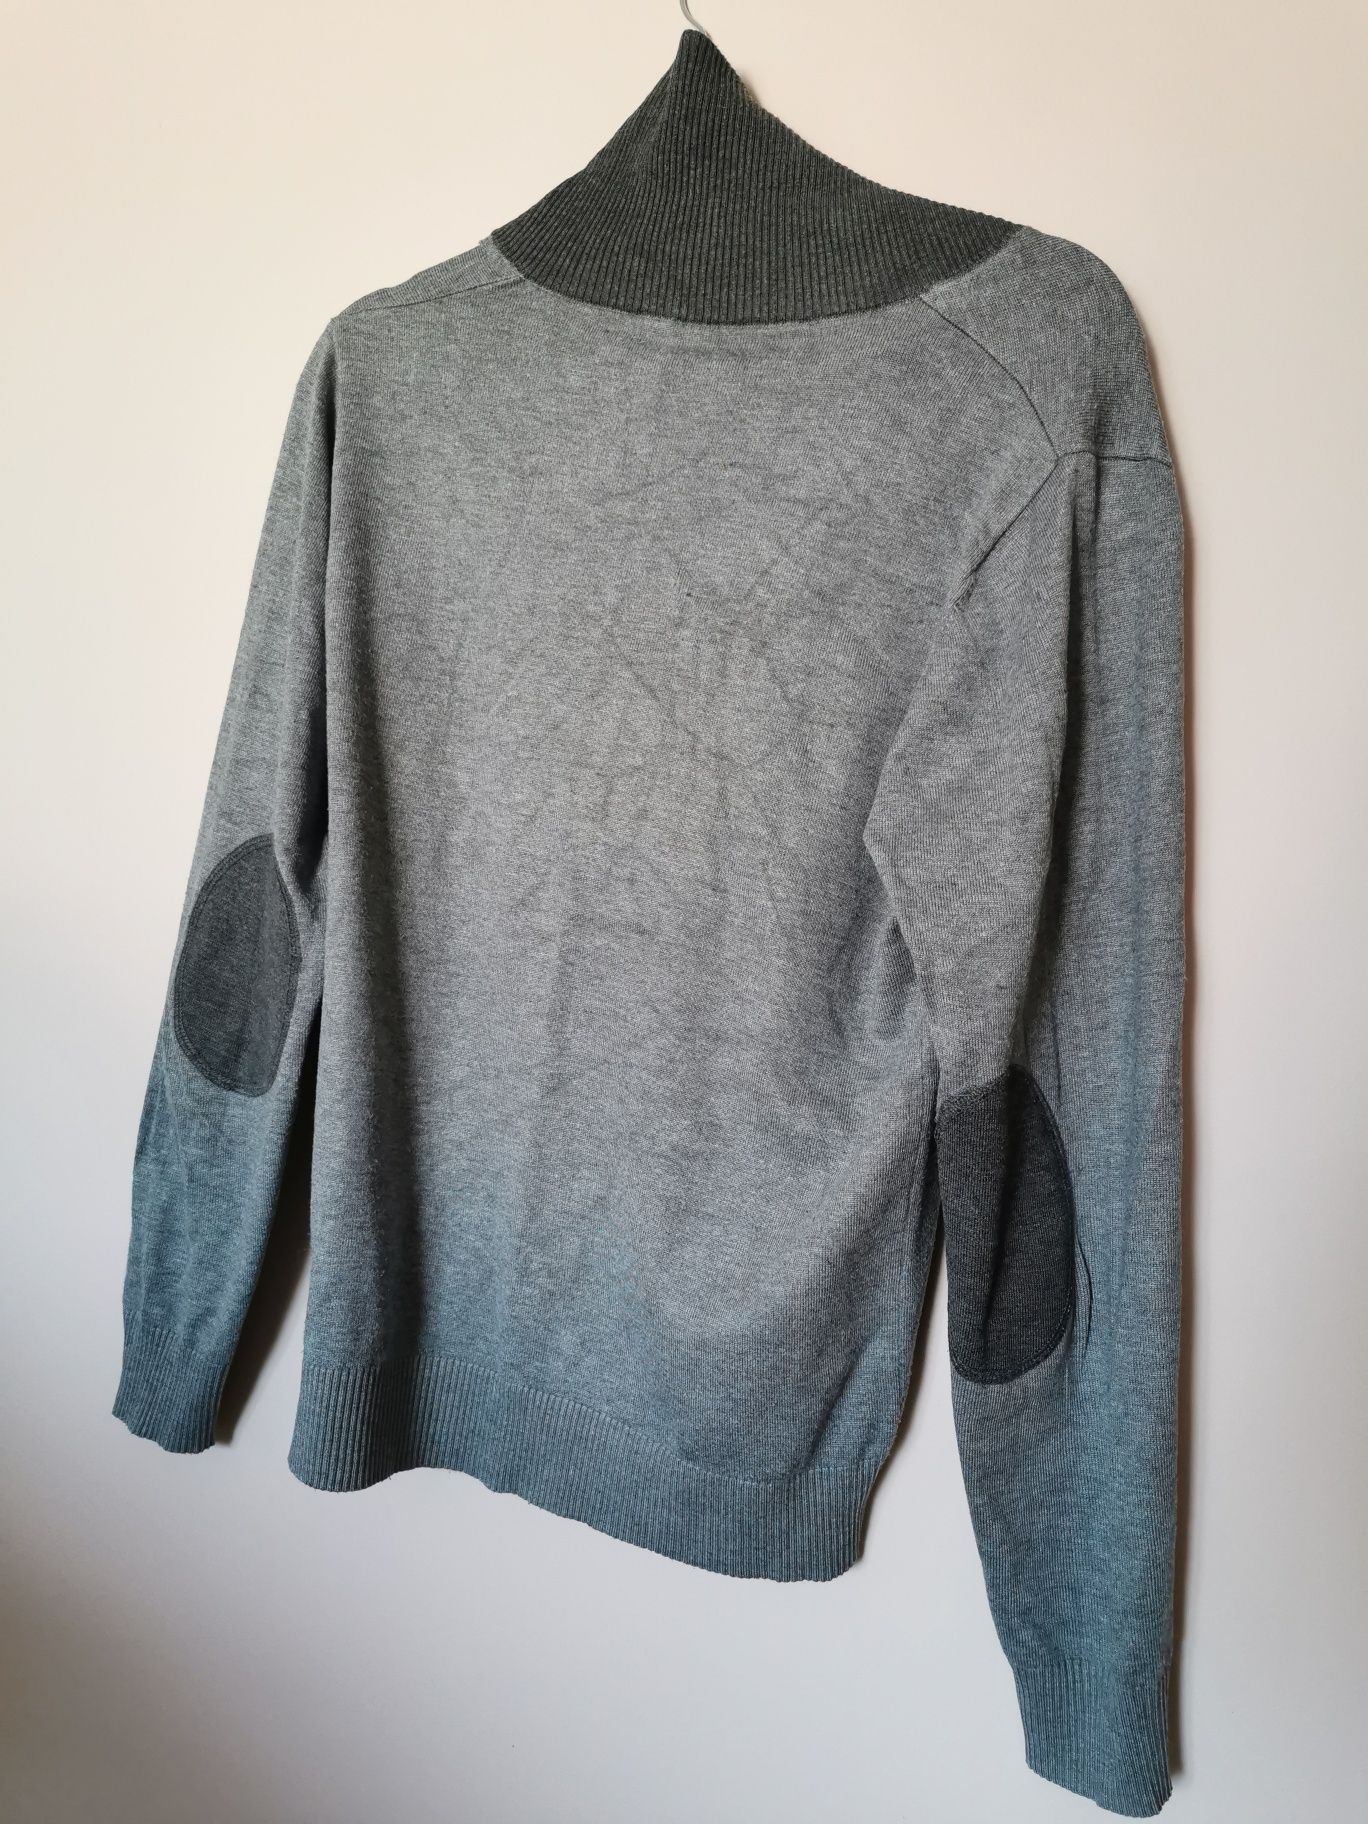 Sweter męski wełna wełniany kaszmir kaszmirowy szary vintage 40 L